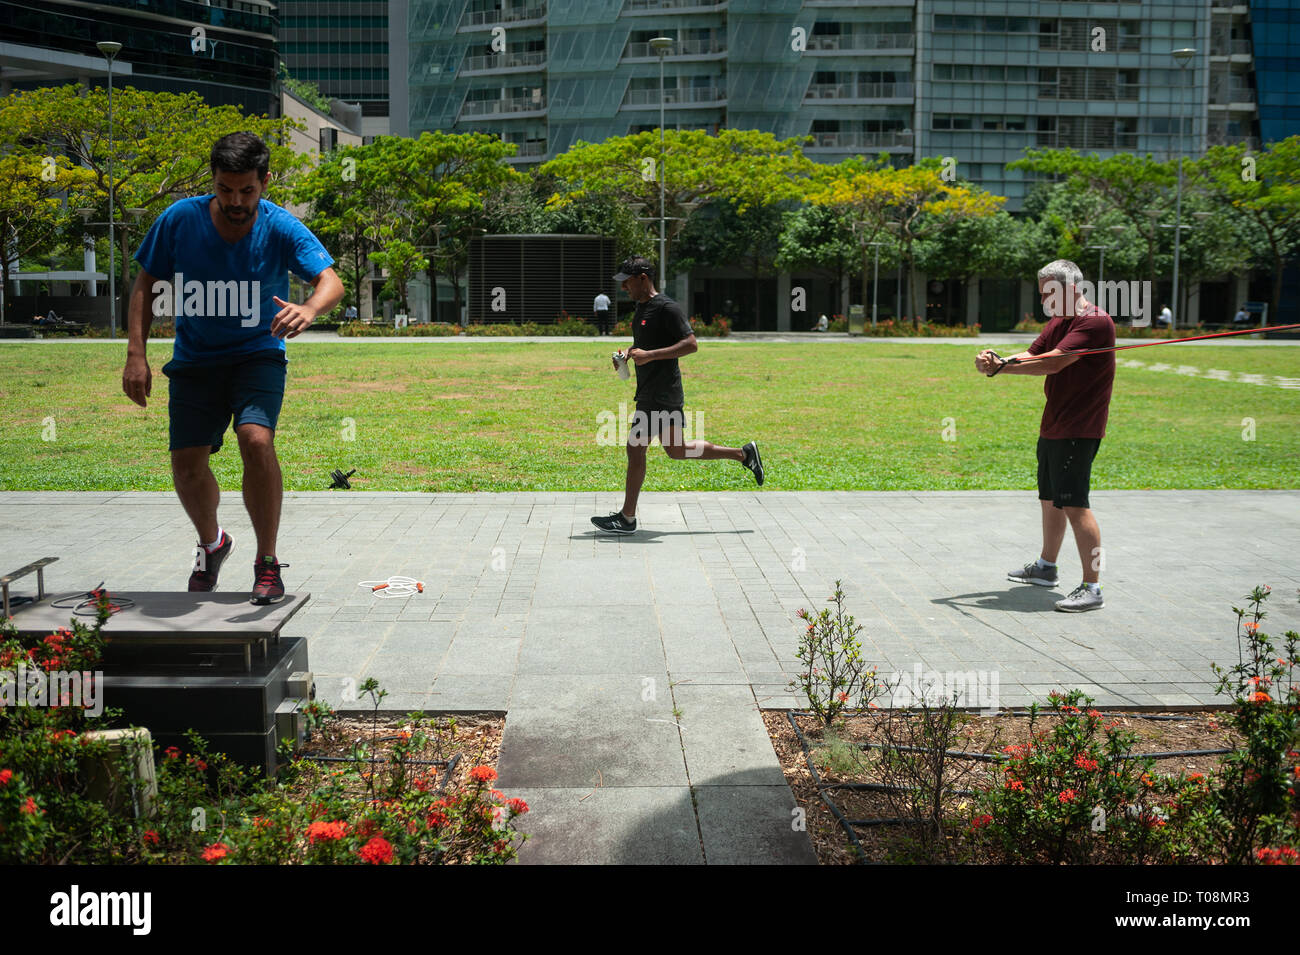 18.04.2018, Singapore, Singapour, Singapour - Deux hommes garder la forme durant leur pause déjeuner dans le quartier des affaires avec le circuit de la formation, alors qu'un jogger Banque D'Images